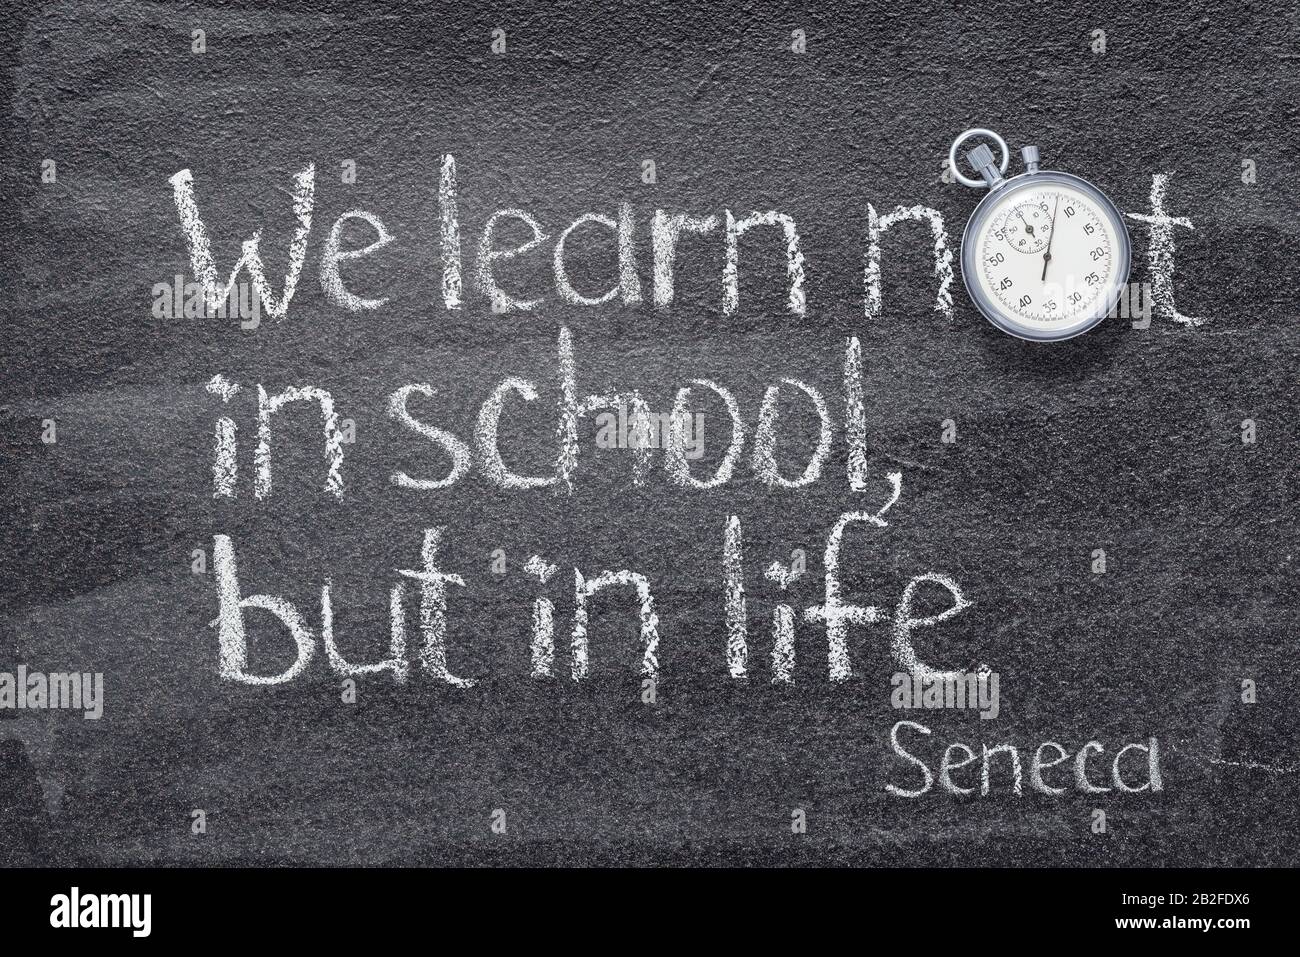 Impariamo non nella scuola, ma nella vita - citazione dell'antico filosofo romano Seneca scritto su lavagna Foto Stock